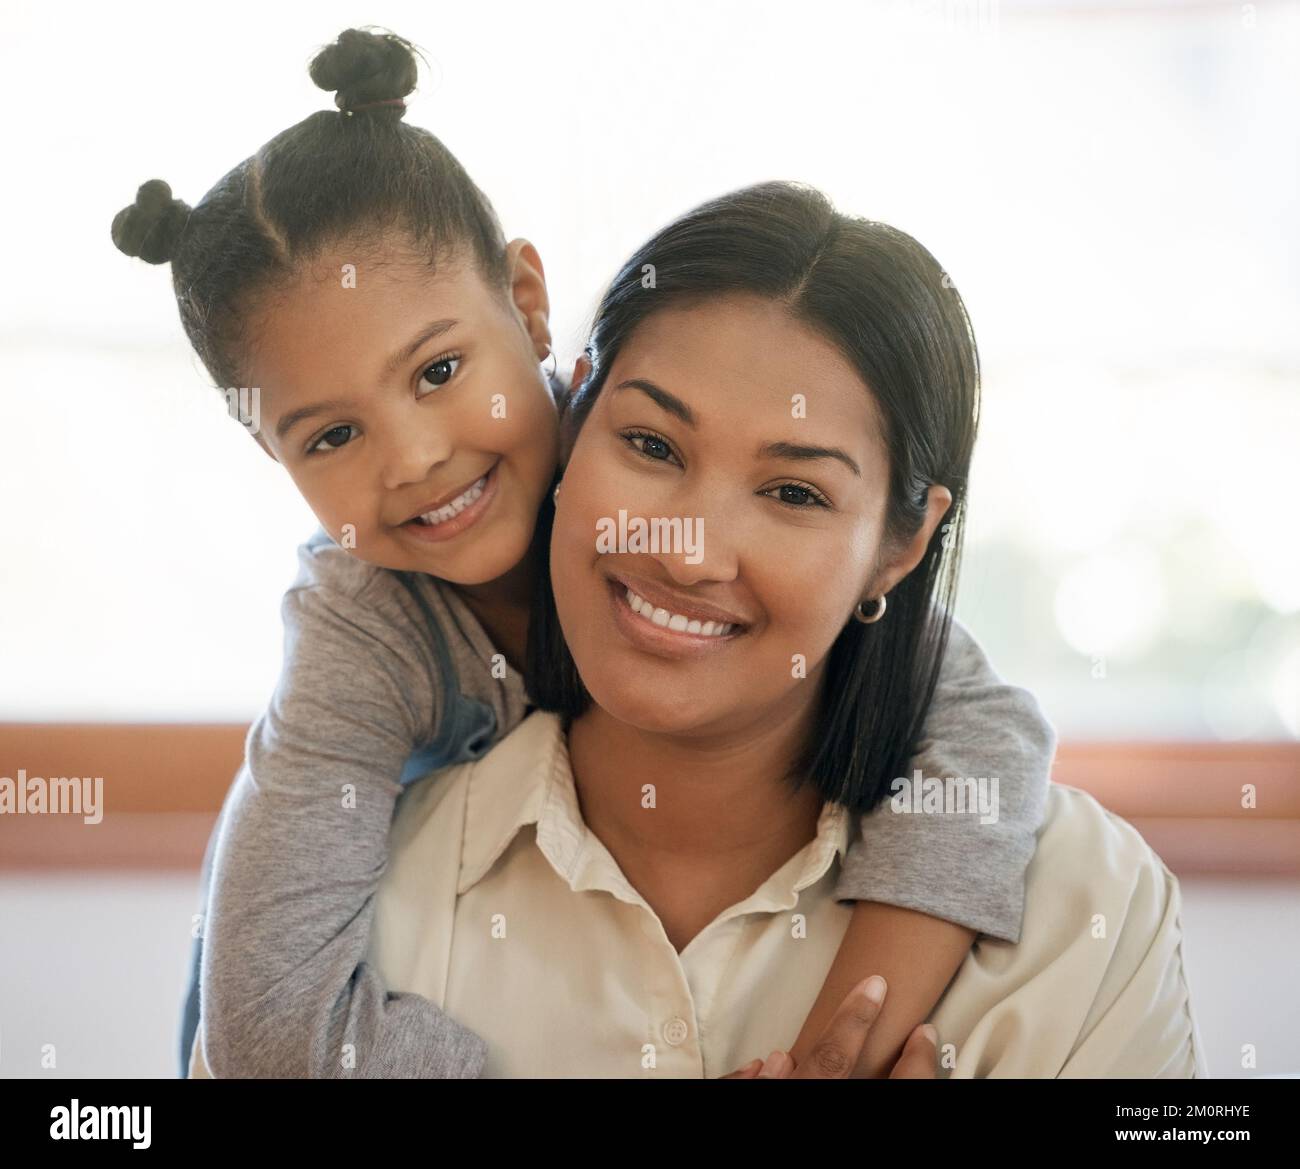 Porträt von zwei gemischten jungen Frauen, die nur lächeln und zu Hause entspannt aussehen. Schwarze afroamerikanische mutter mit ihrer süßen hispanischen kleinen Tochter Stockfoto